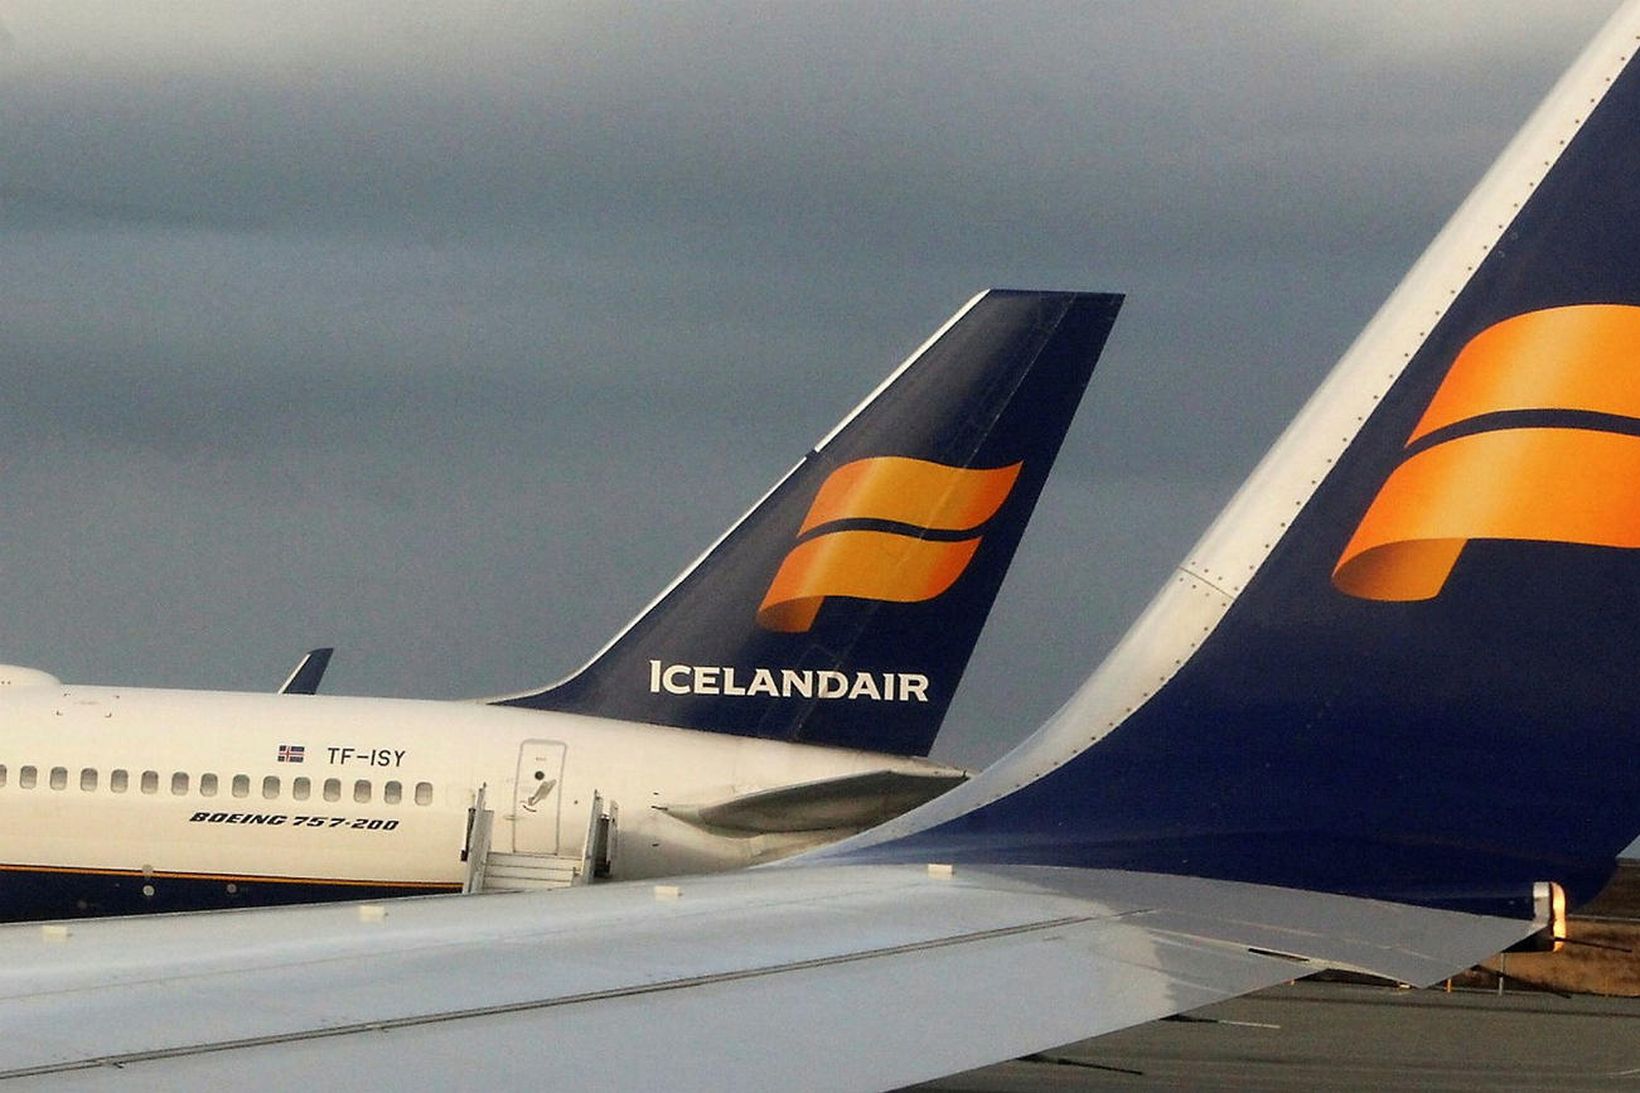 Bréf Icelandair lækkuðu í fyrstu viðskiptum í Kauphöllinni í dag.